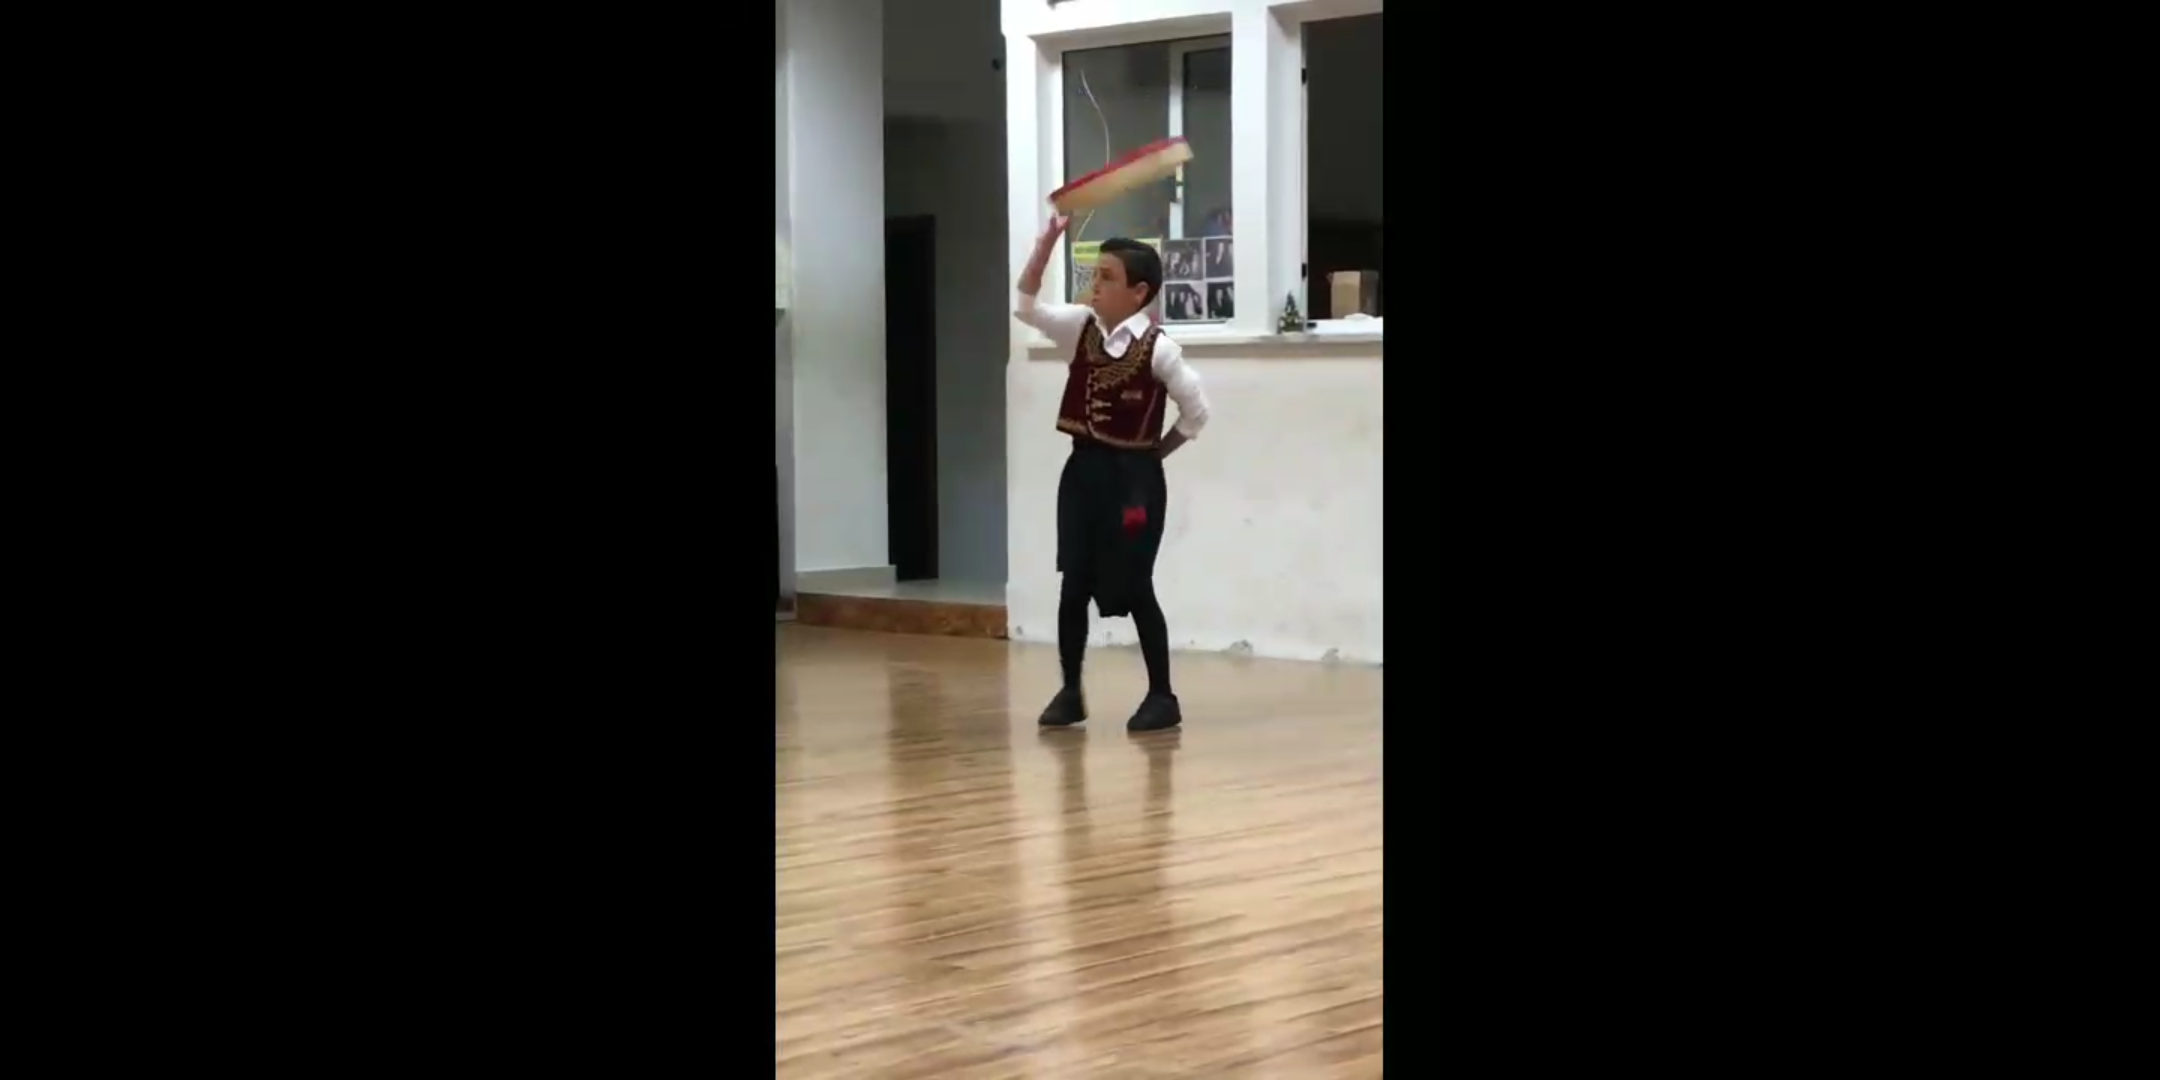 Ο 9χρονος που μάγεψε χορεύοντας την Τατσια - ΒINTEO